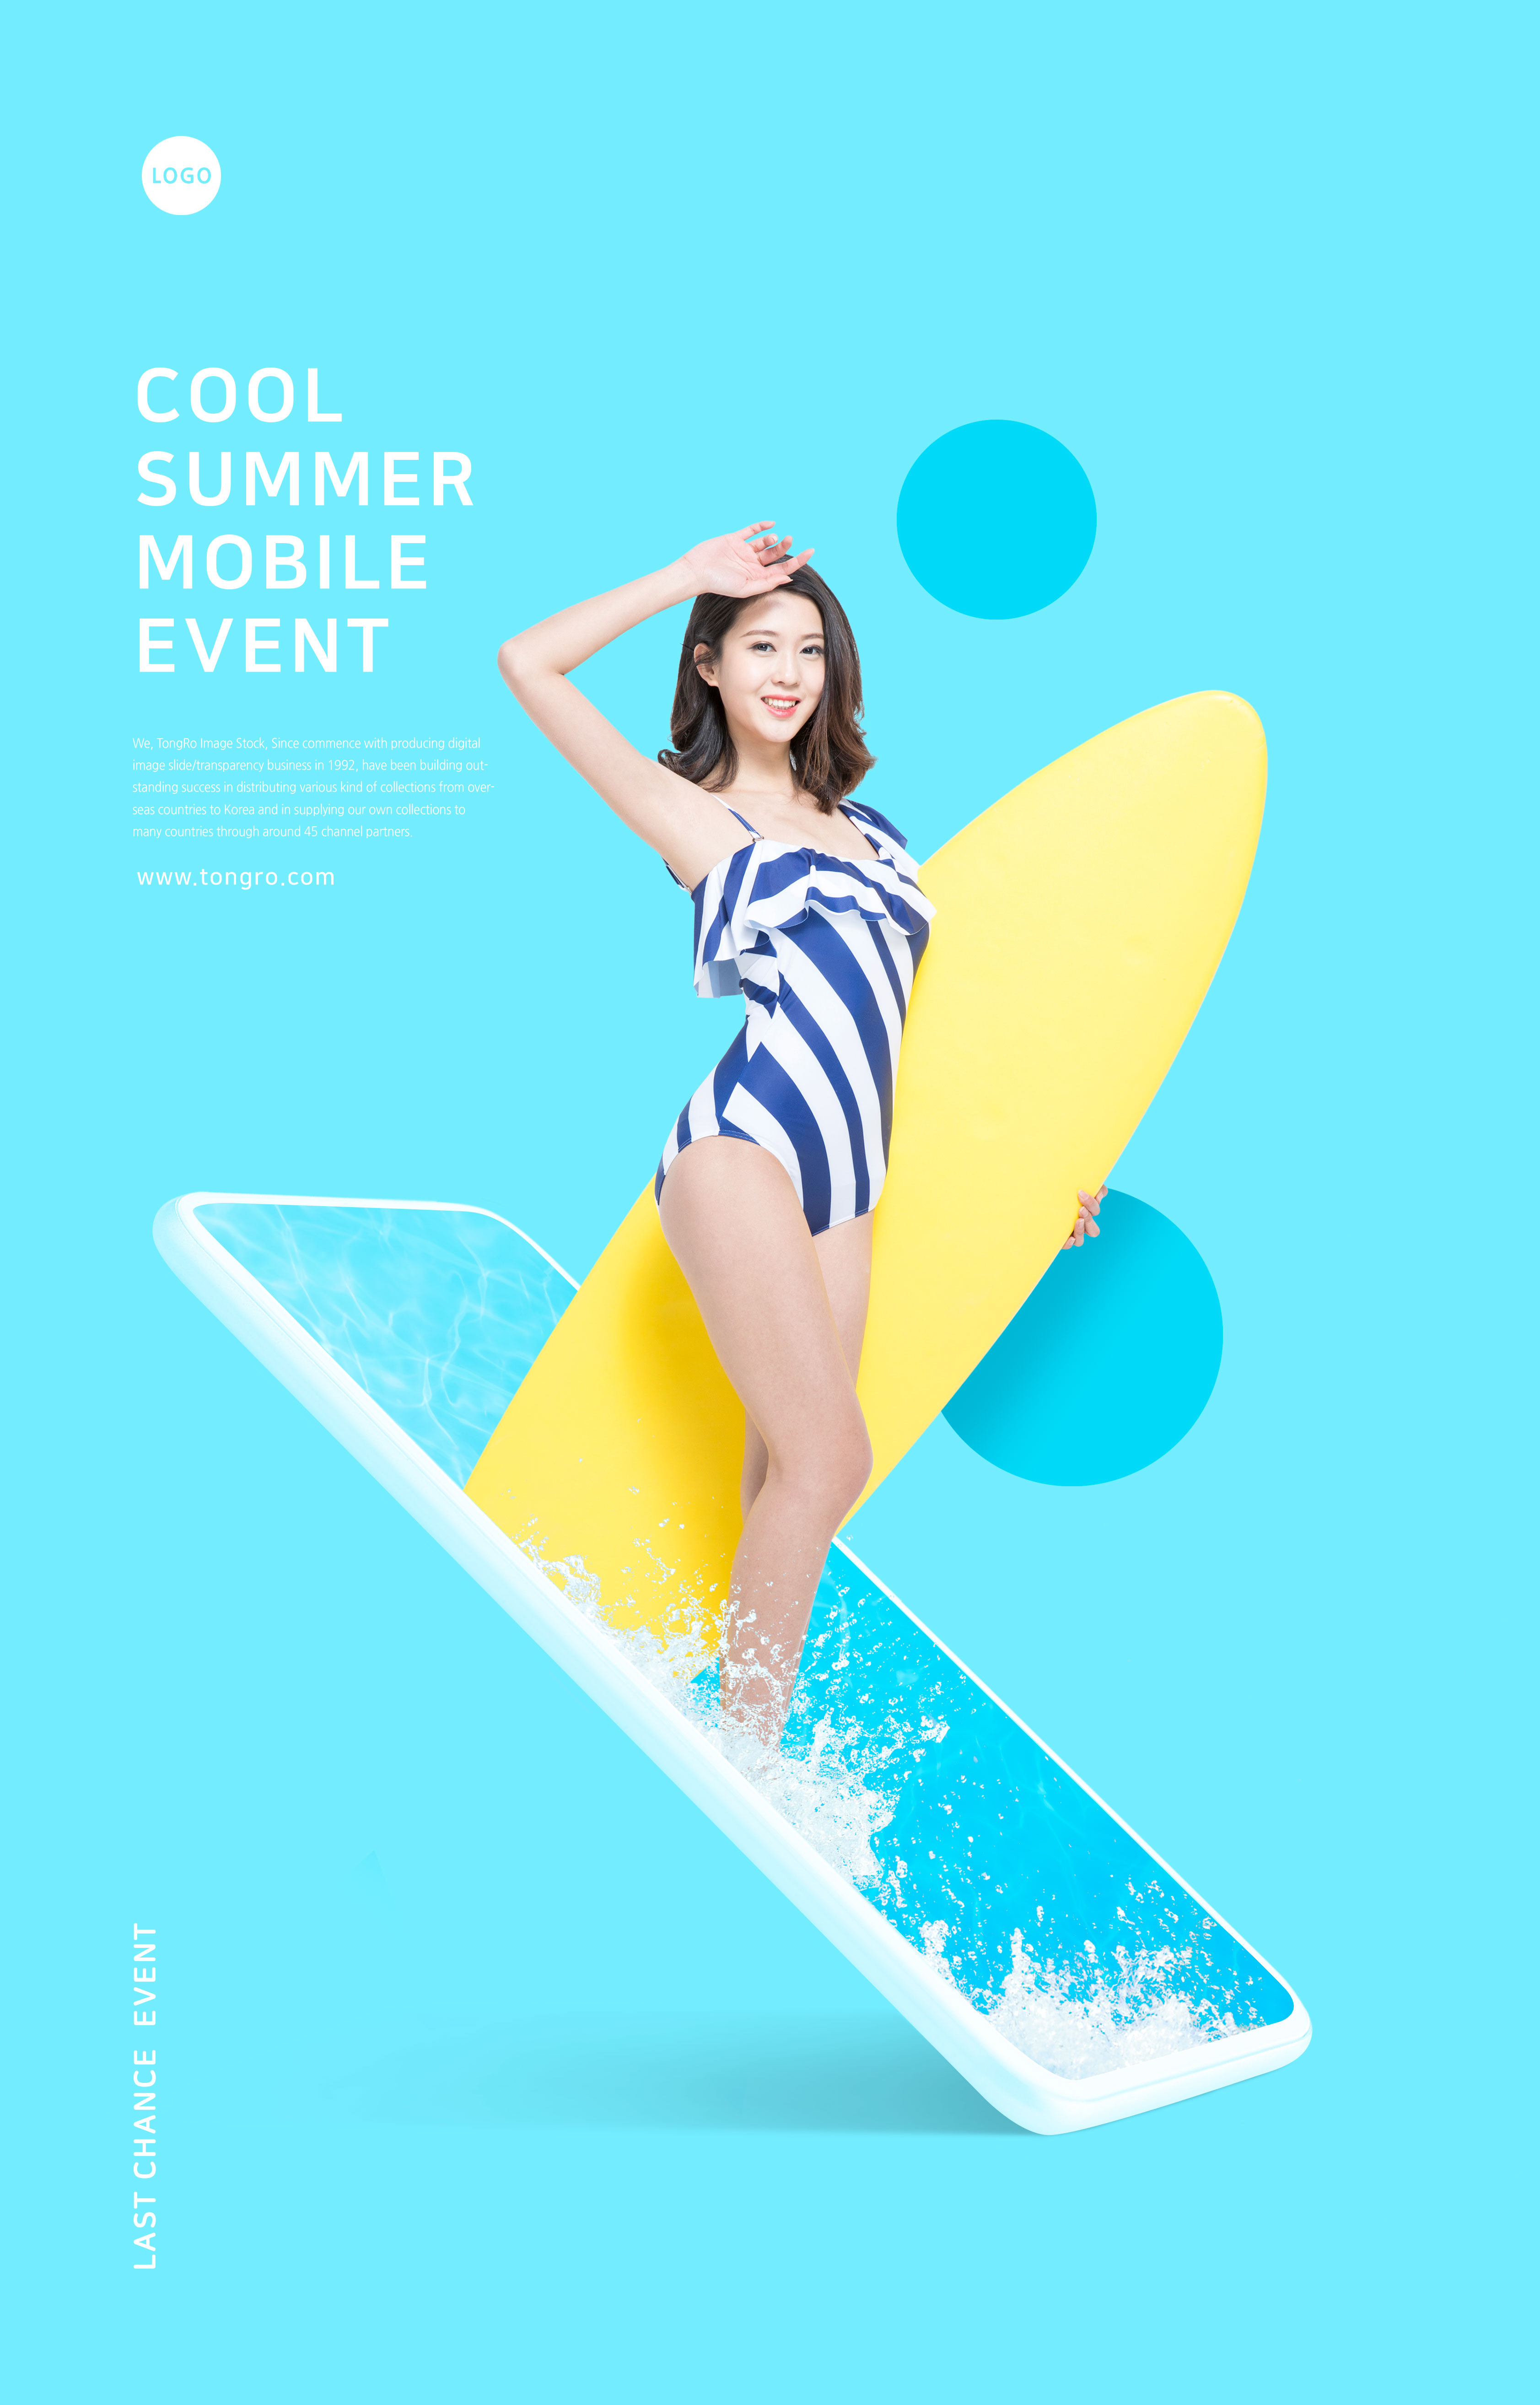 夏季性感美女冲浪活动宣传海报设计插图